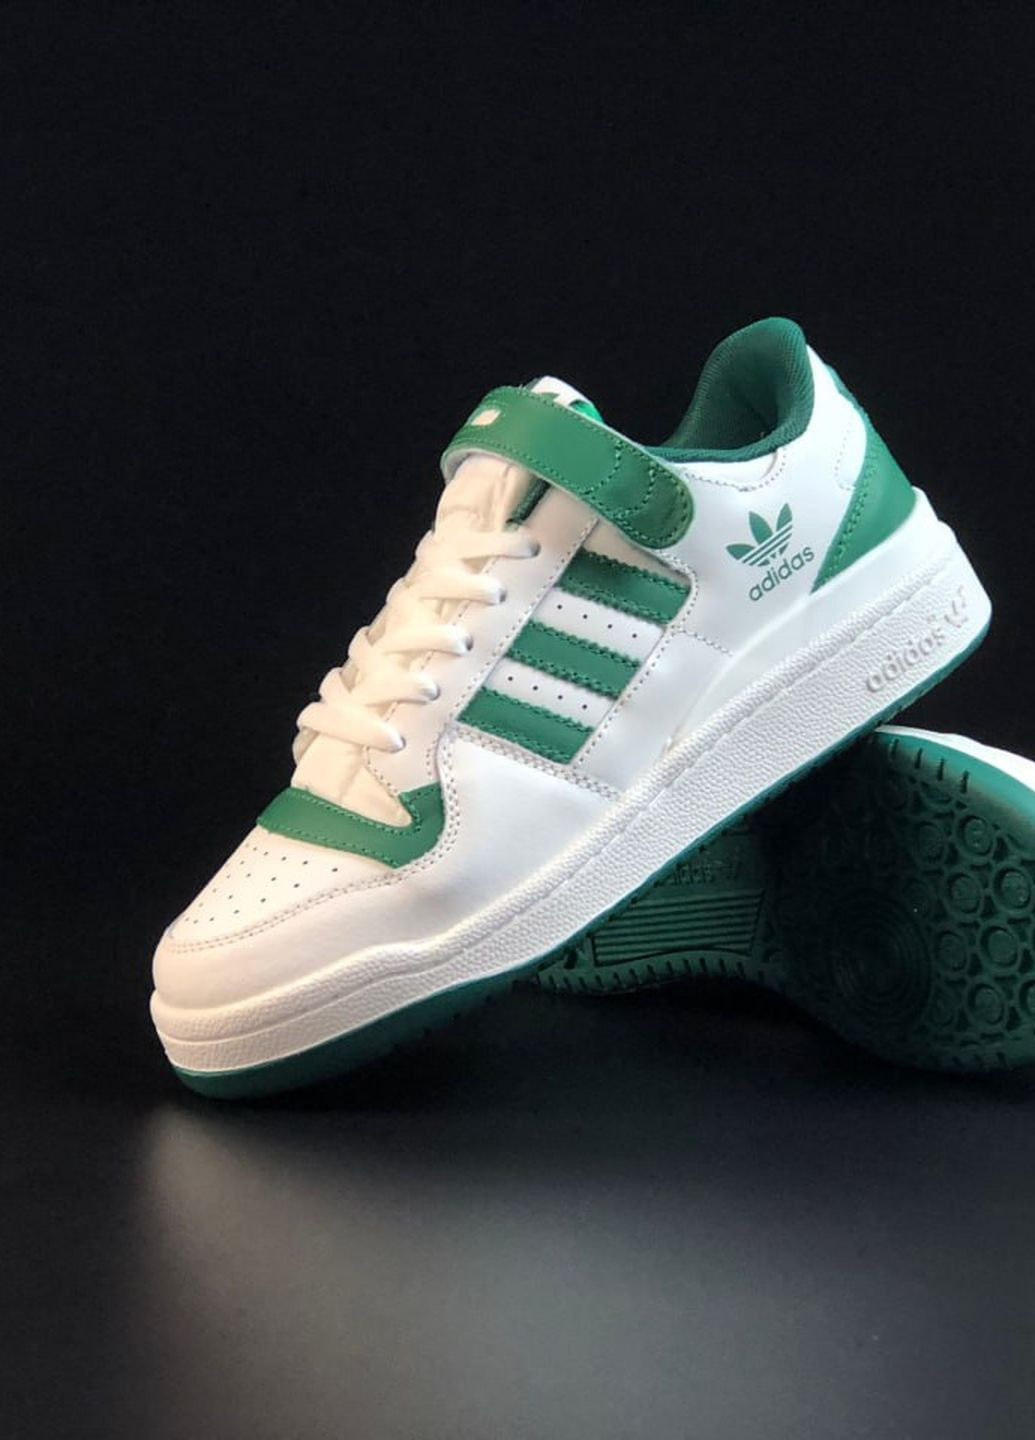 Цветные демисезонные кроссовки мужские adidas forum low реплика бело-зеленые No Brand